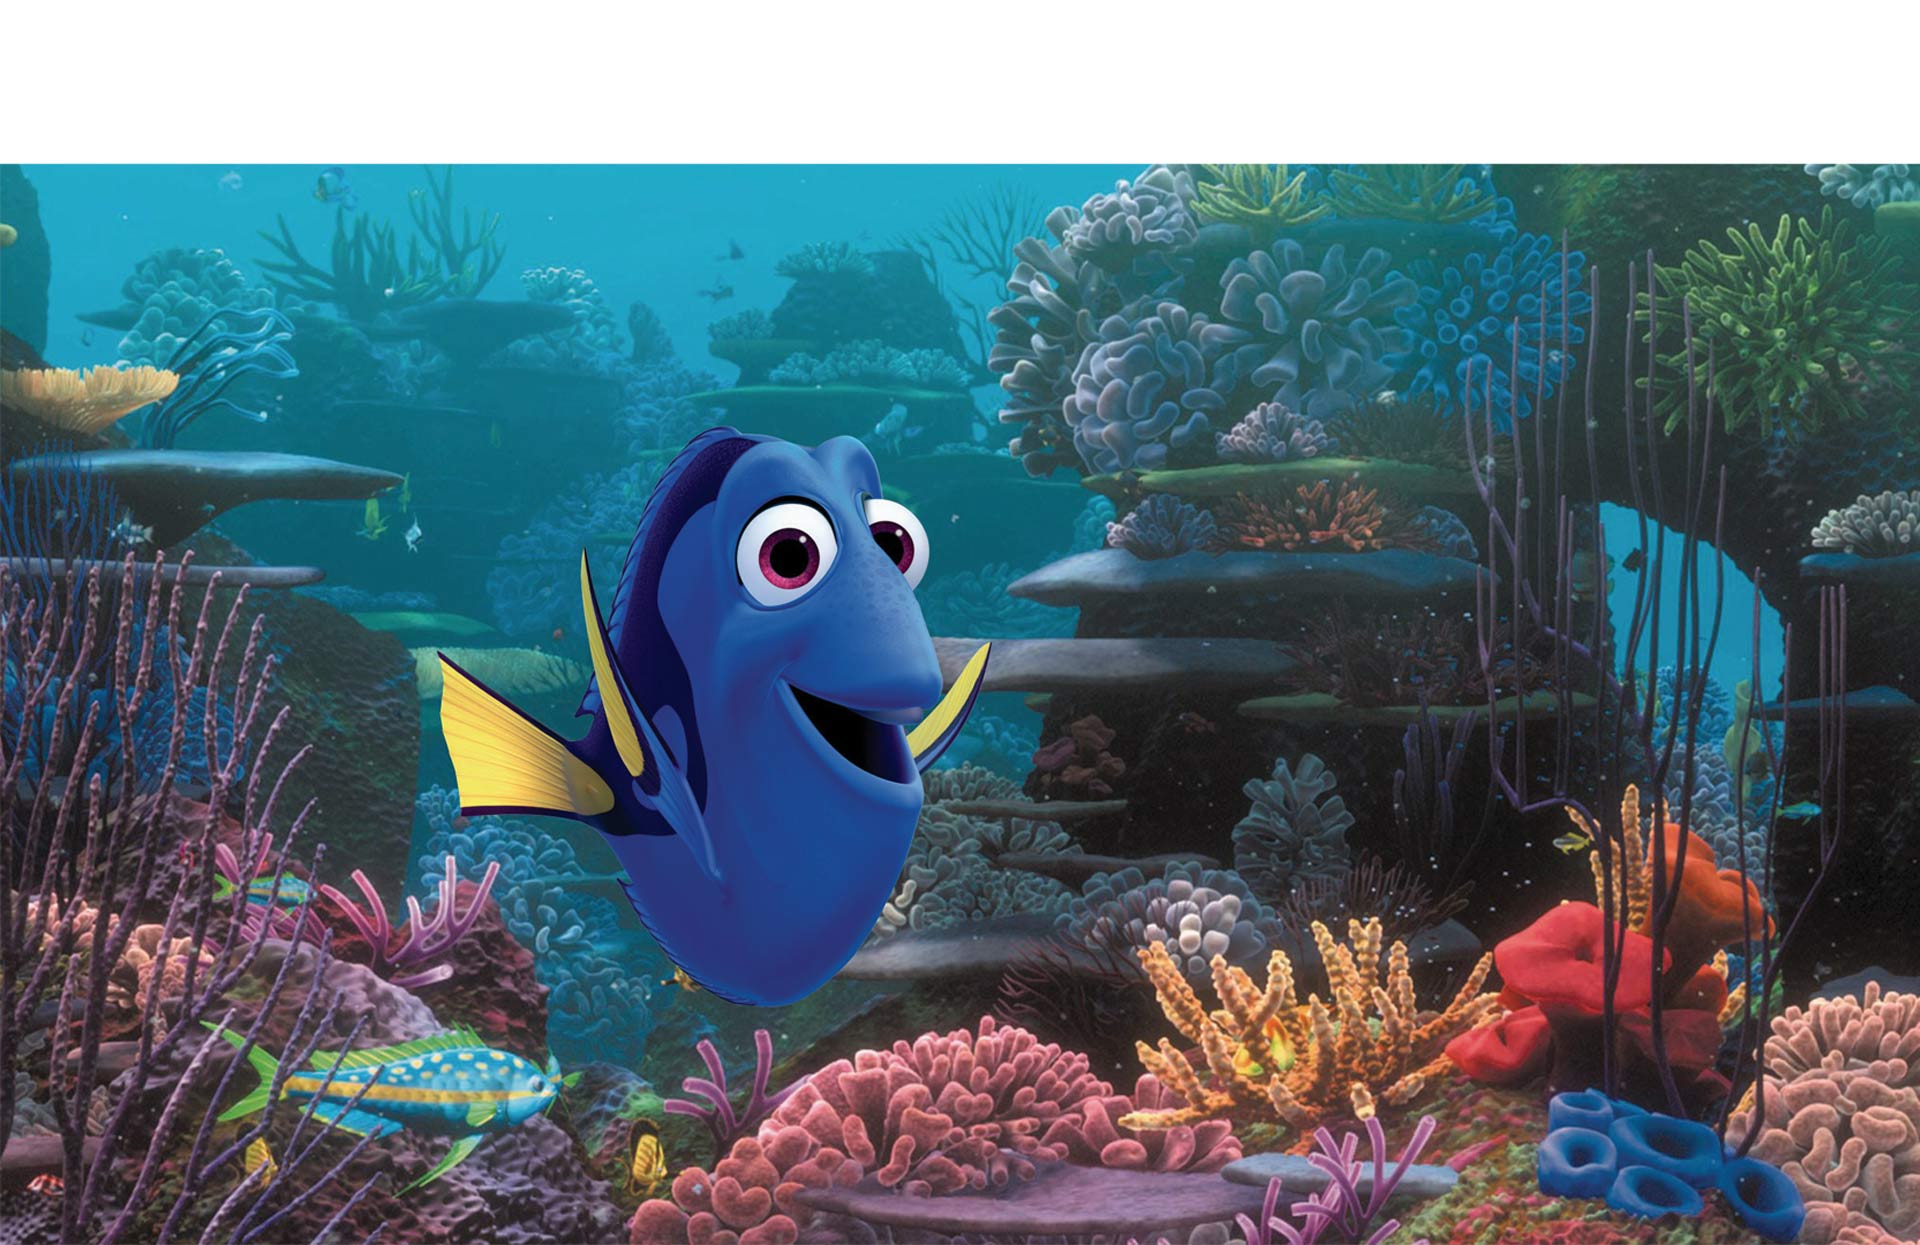 Una de las películas más exitosas Disney Pixar ya tiene lista su secuela, y promete divertir de nuevo a grandes y chicos